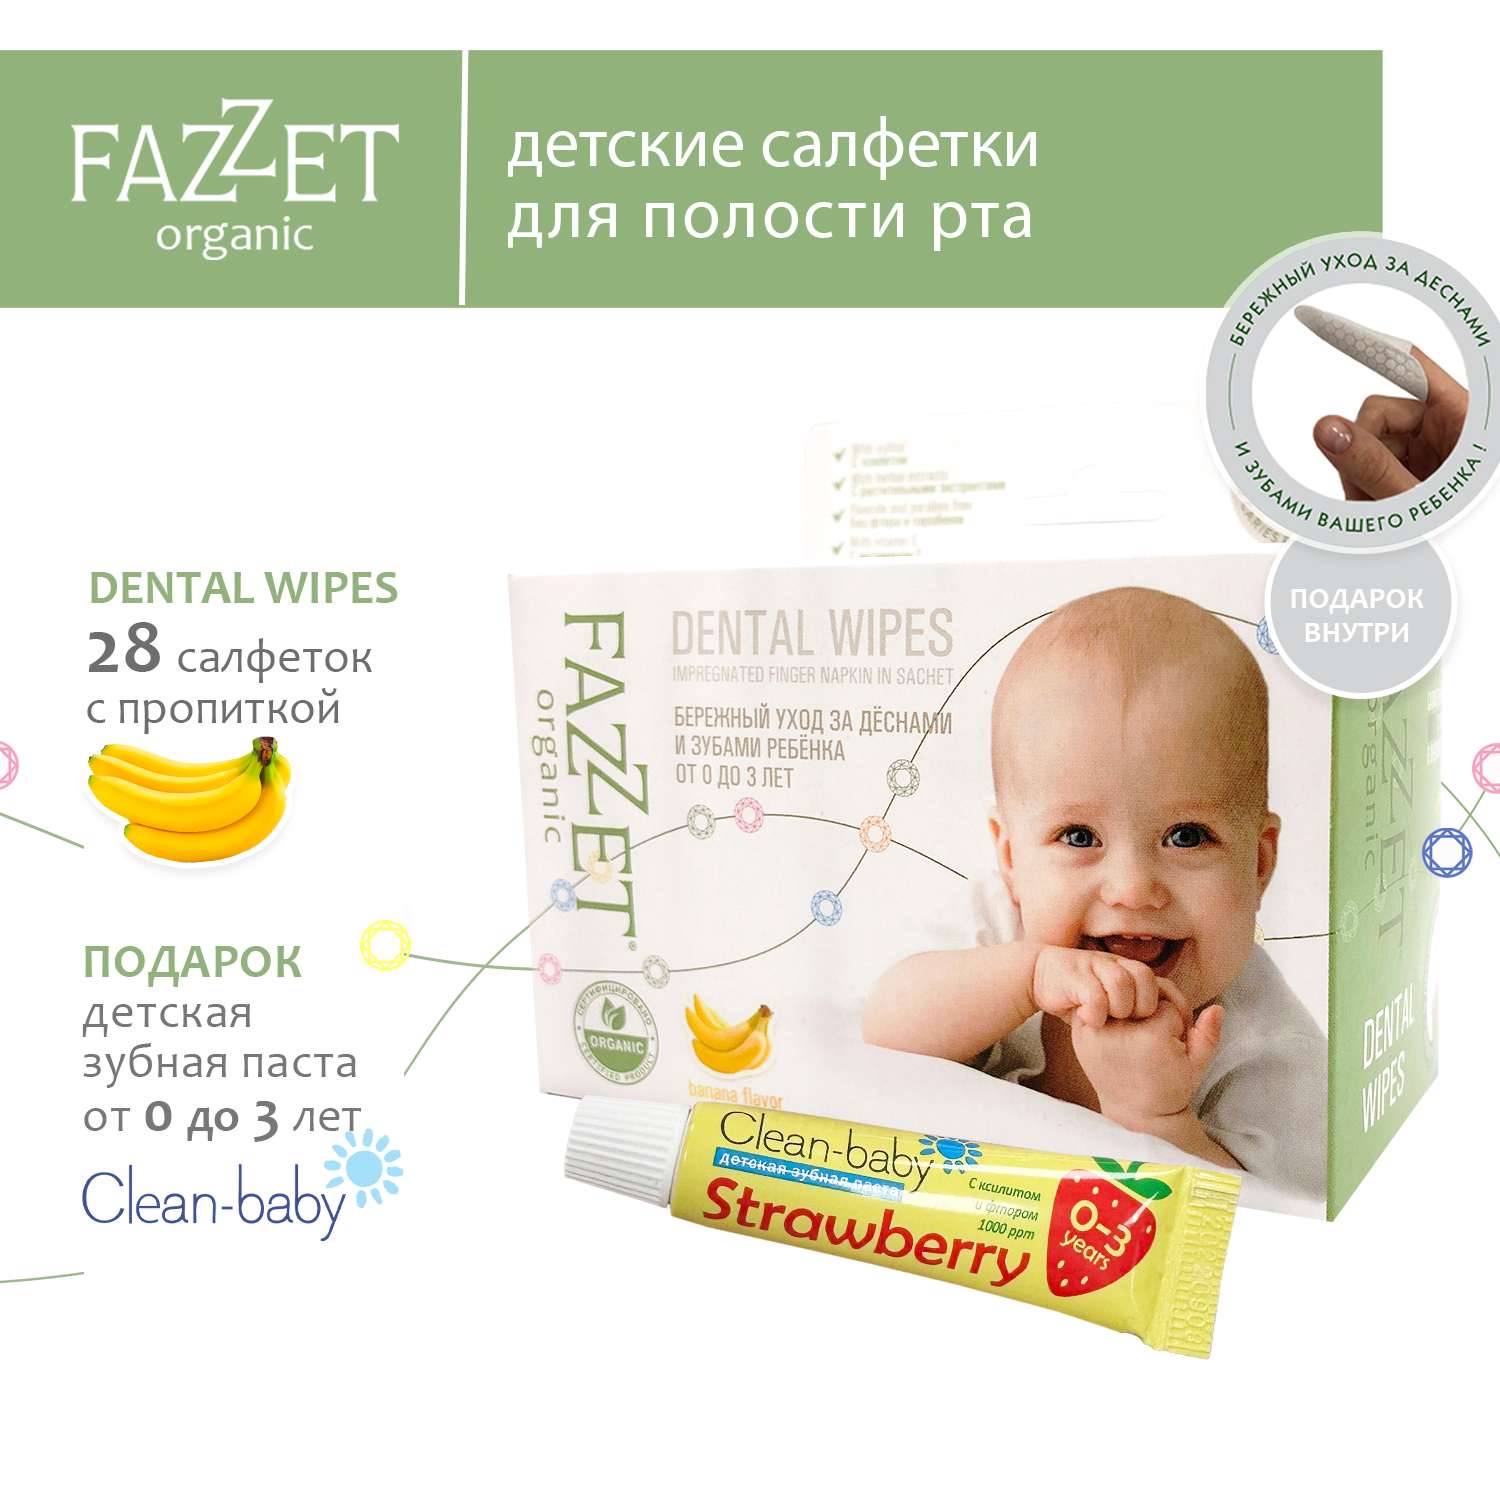 Детские салфетки Fazzet ORGANIC для полости рта 0-3 года 28 шт и подарок зубная паста Clean-baby 0-3 года 5 мл - фото 2